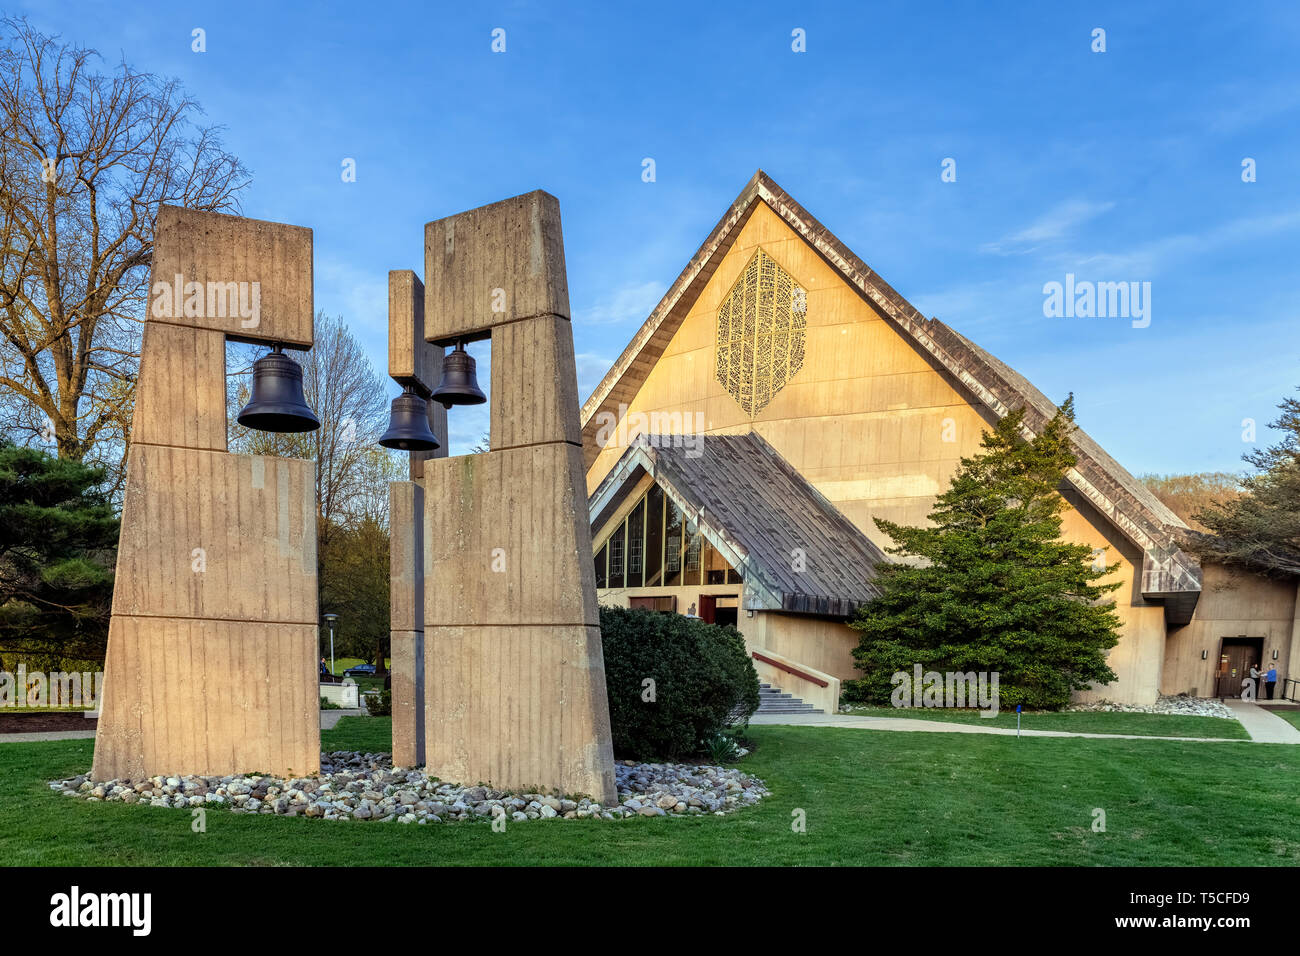 Daylesford Abtei Kirche und Glockenturm, Paoli, Pennsylvania, USA. Stockfoto